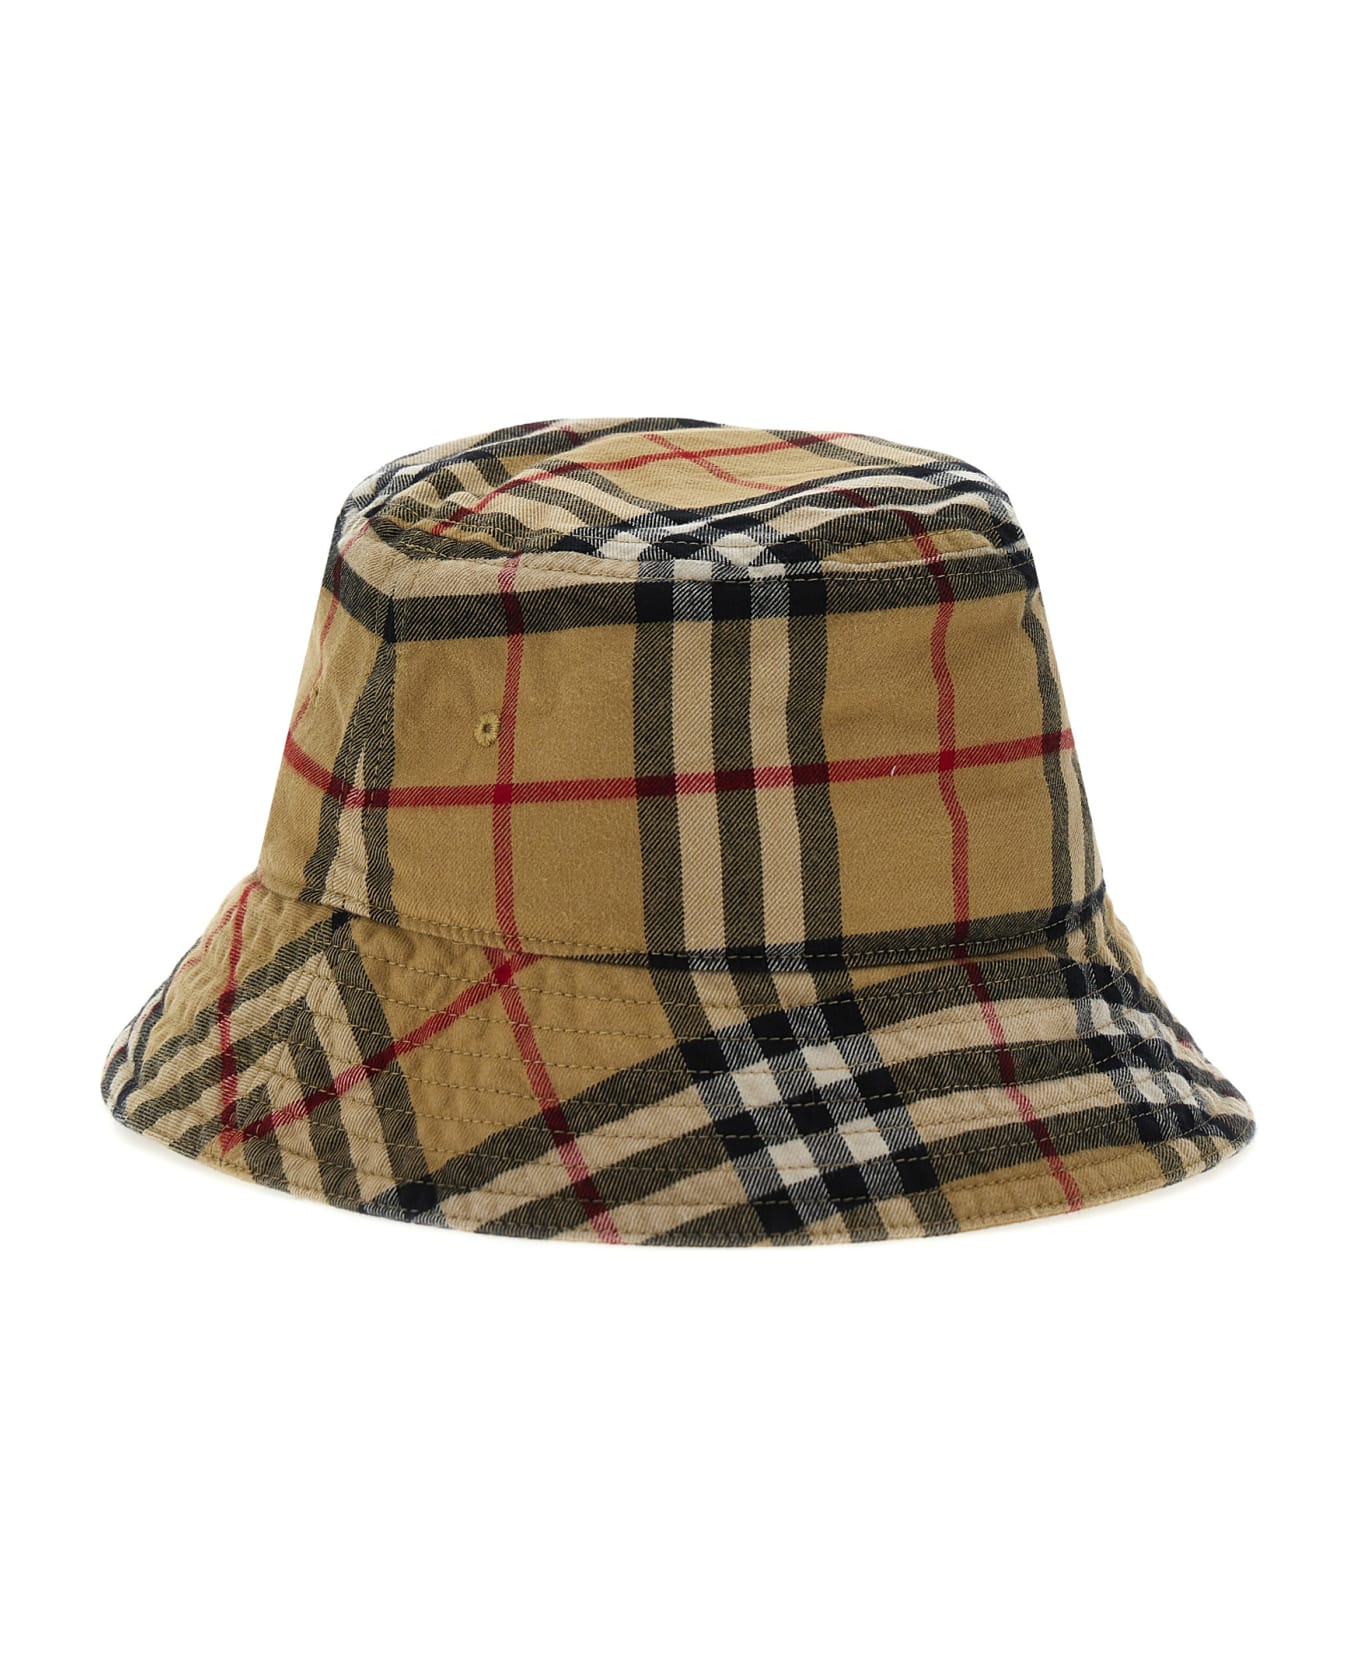 Burberry Bucket Hat Check - Beige